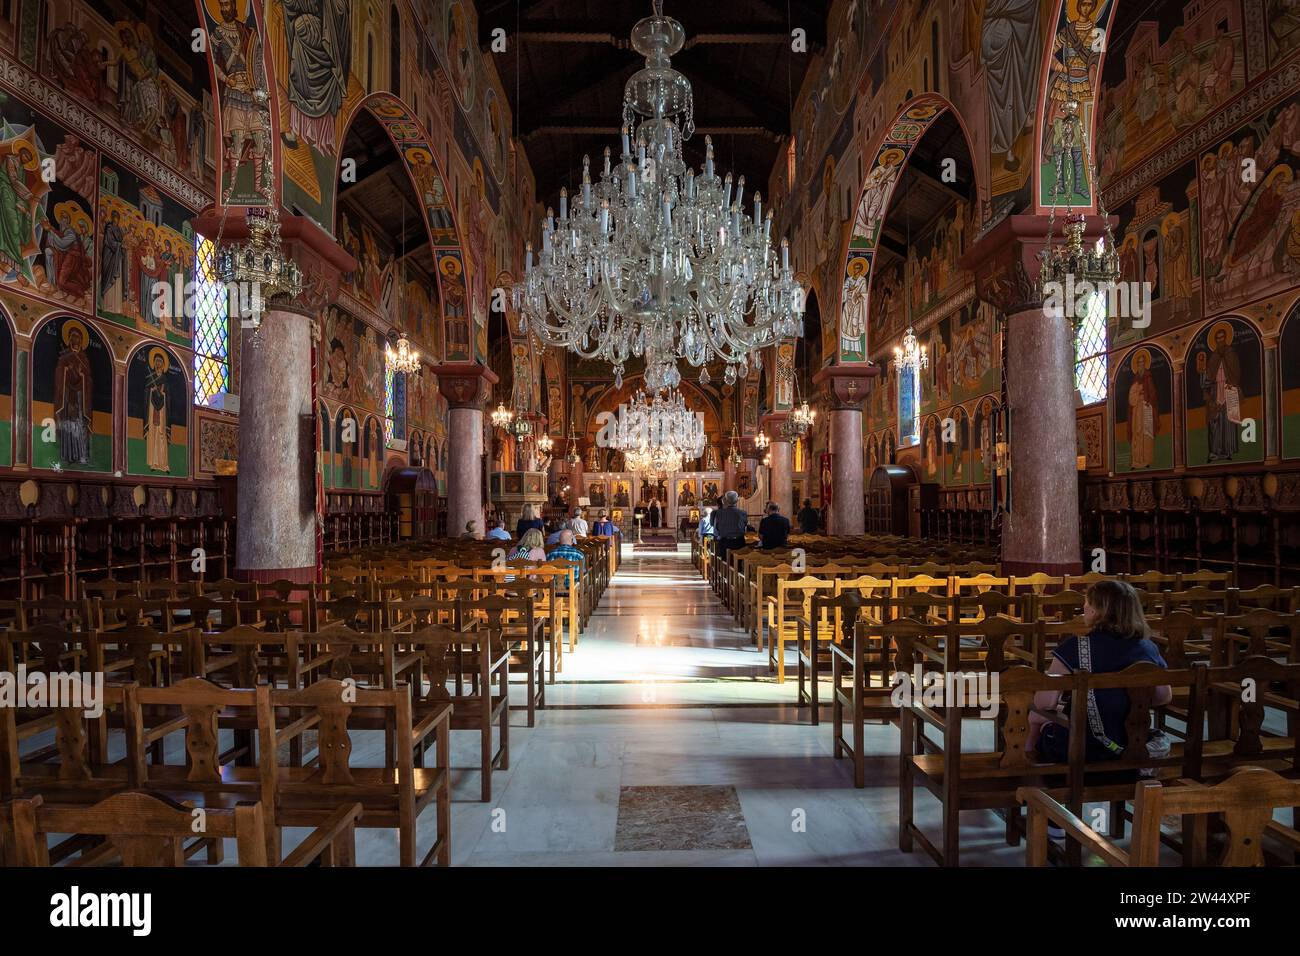 Innenraum mit Fresken, Kirche Ekklisia Evangelismou, Rhodos Stadt, Rhodos, Griechenland Stock Photo